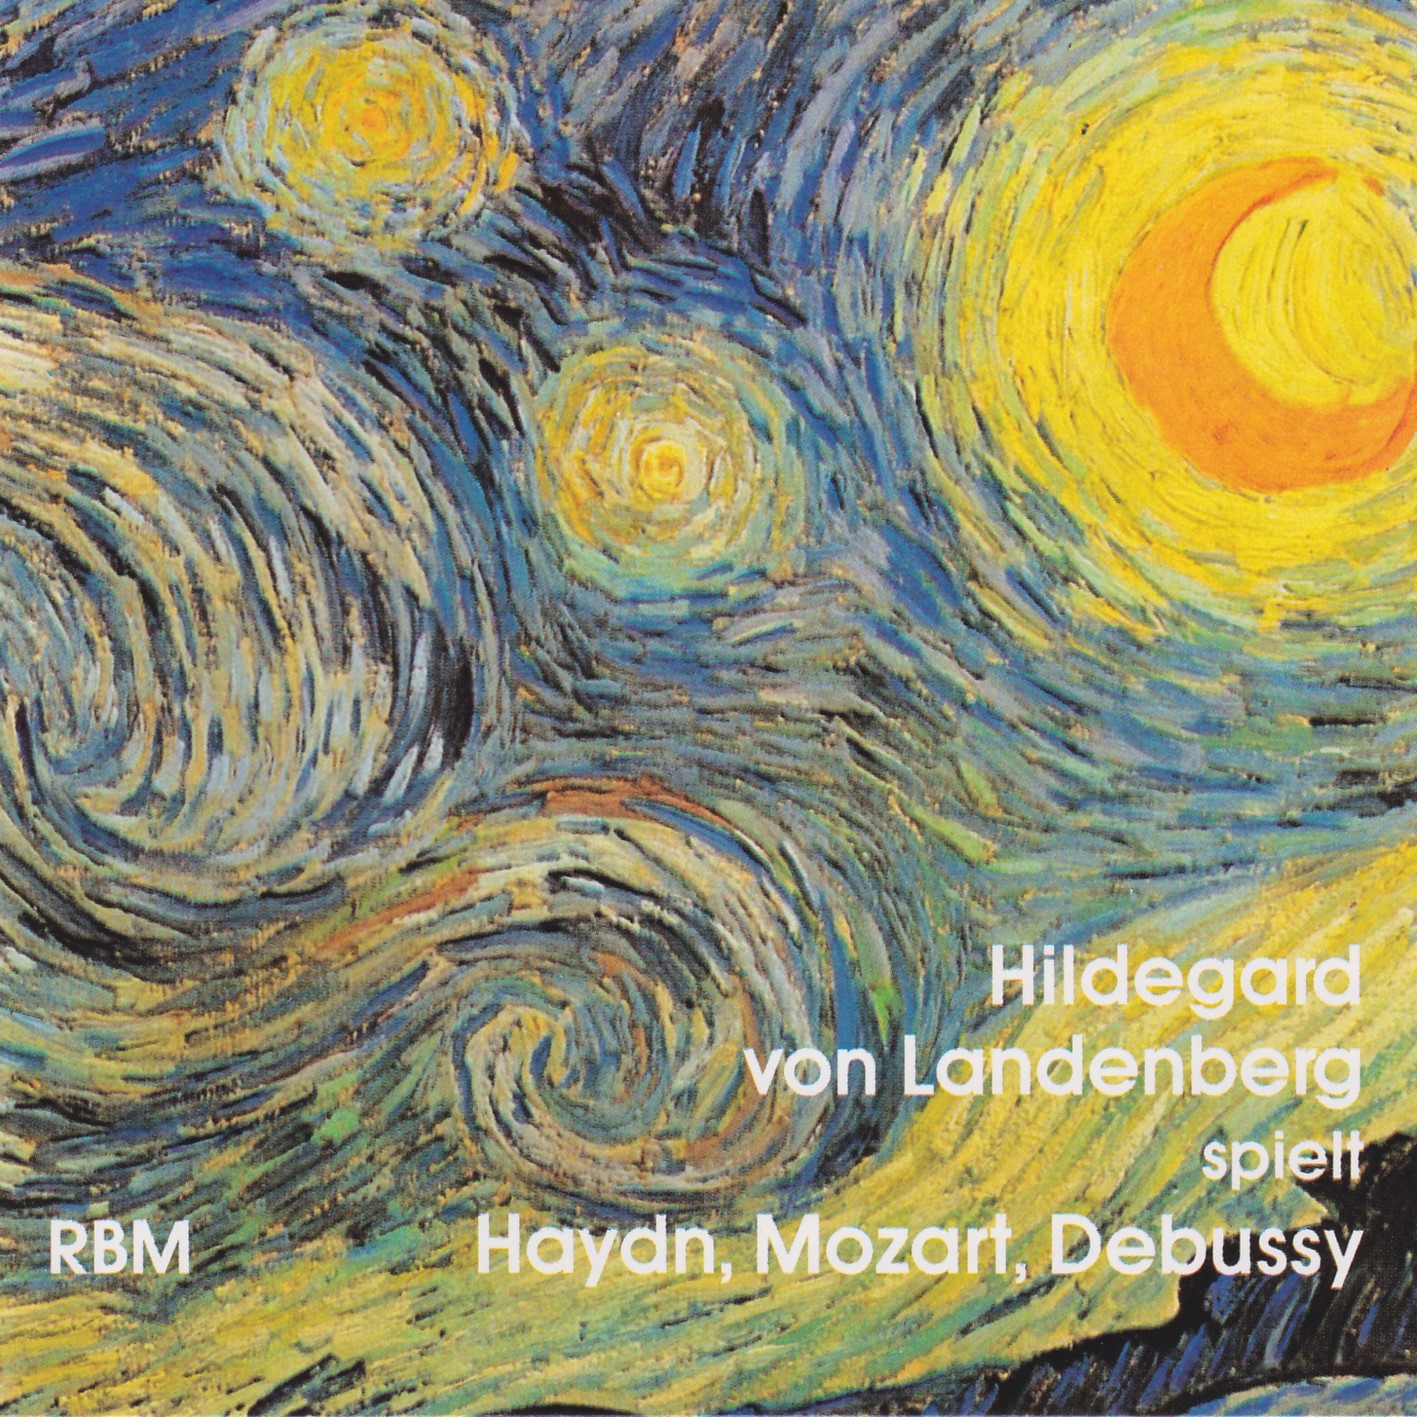 Recital Hildegard von Landenberg